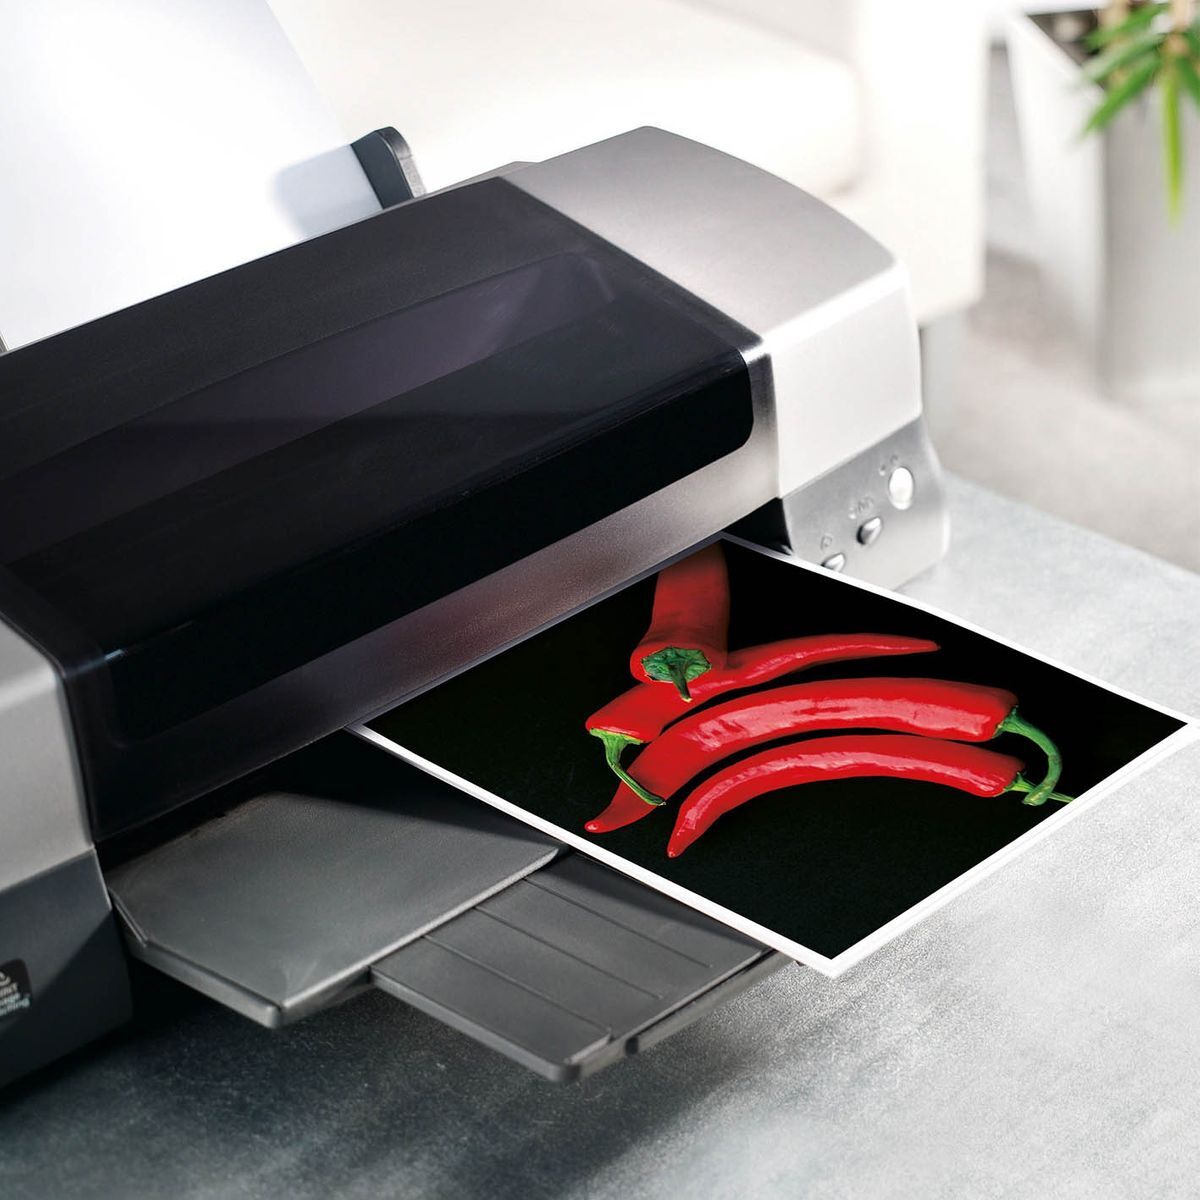 Inkjet Fotopapier Ultra - A4, seidenmatt, 190 g/qm, 20 Blatt